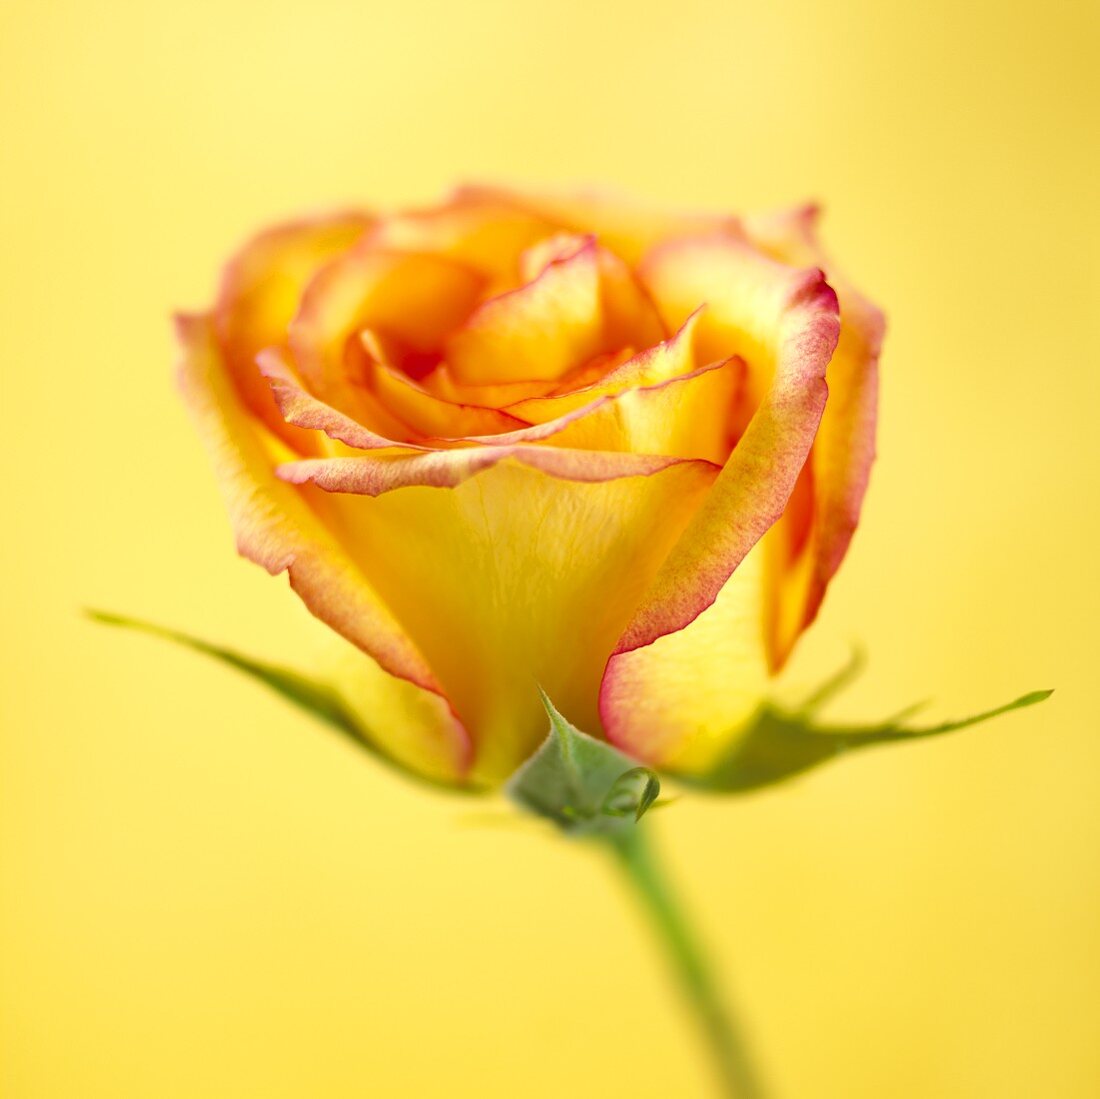 A bi-coloured rose